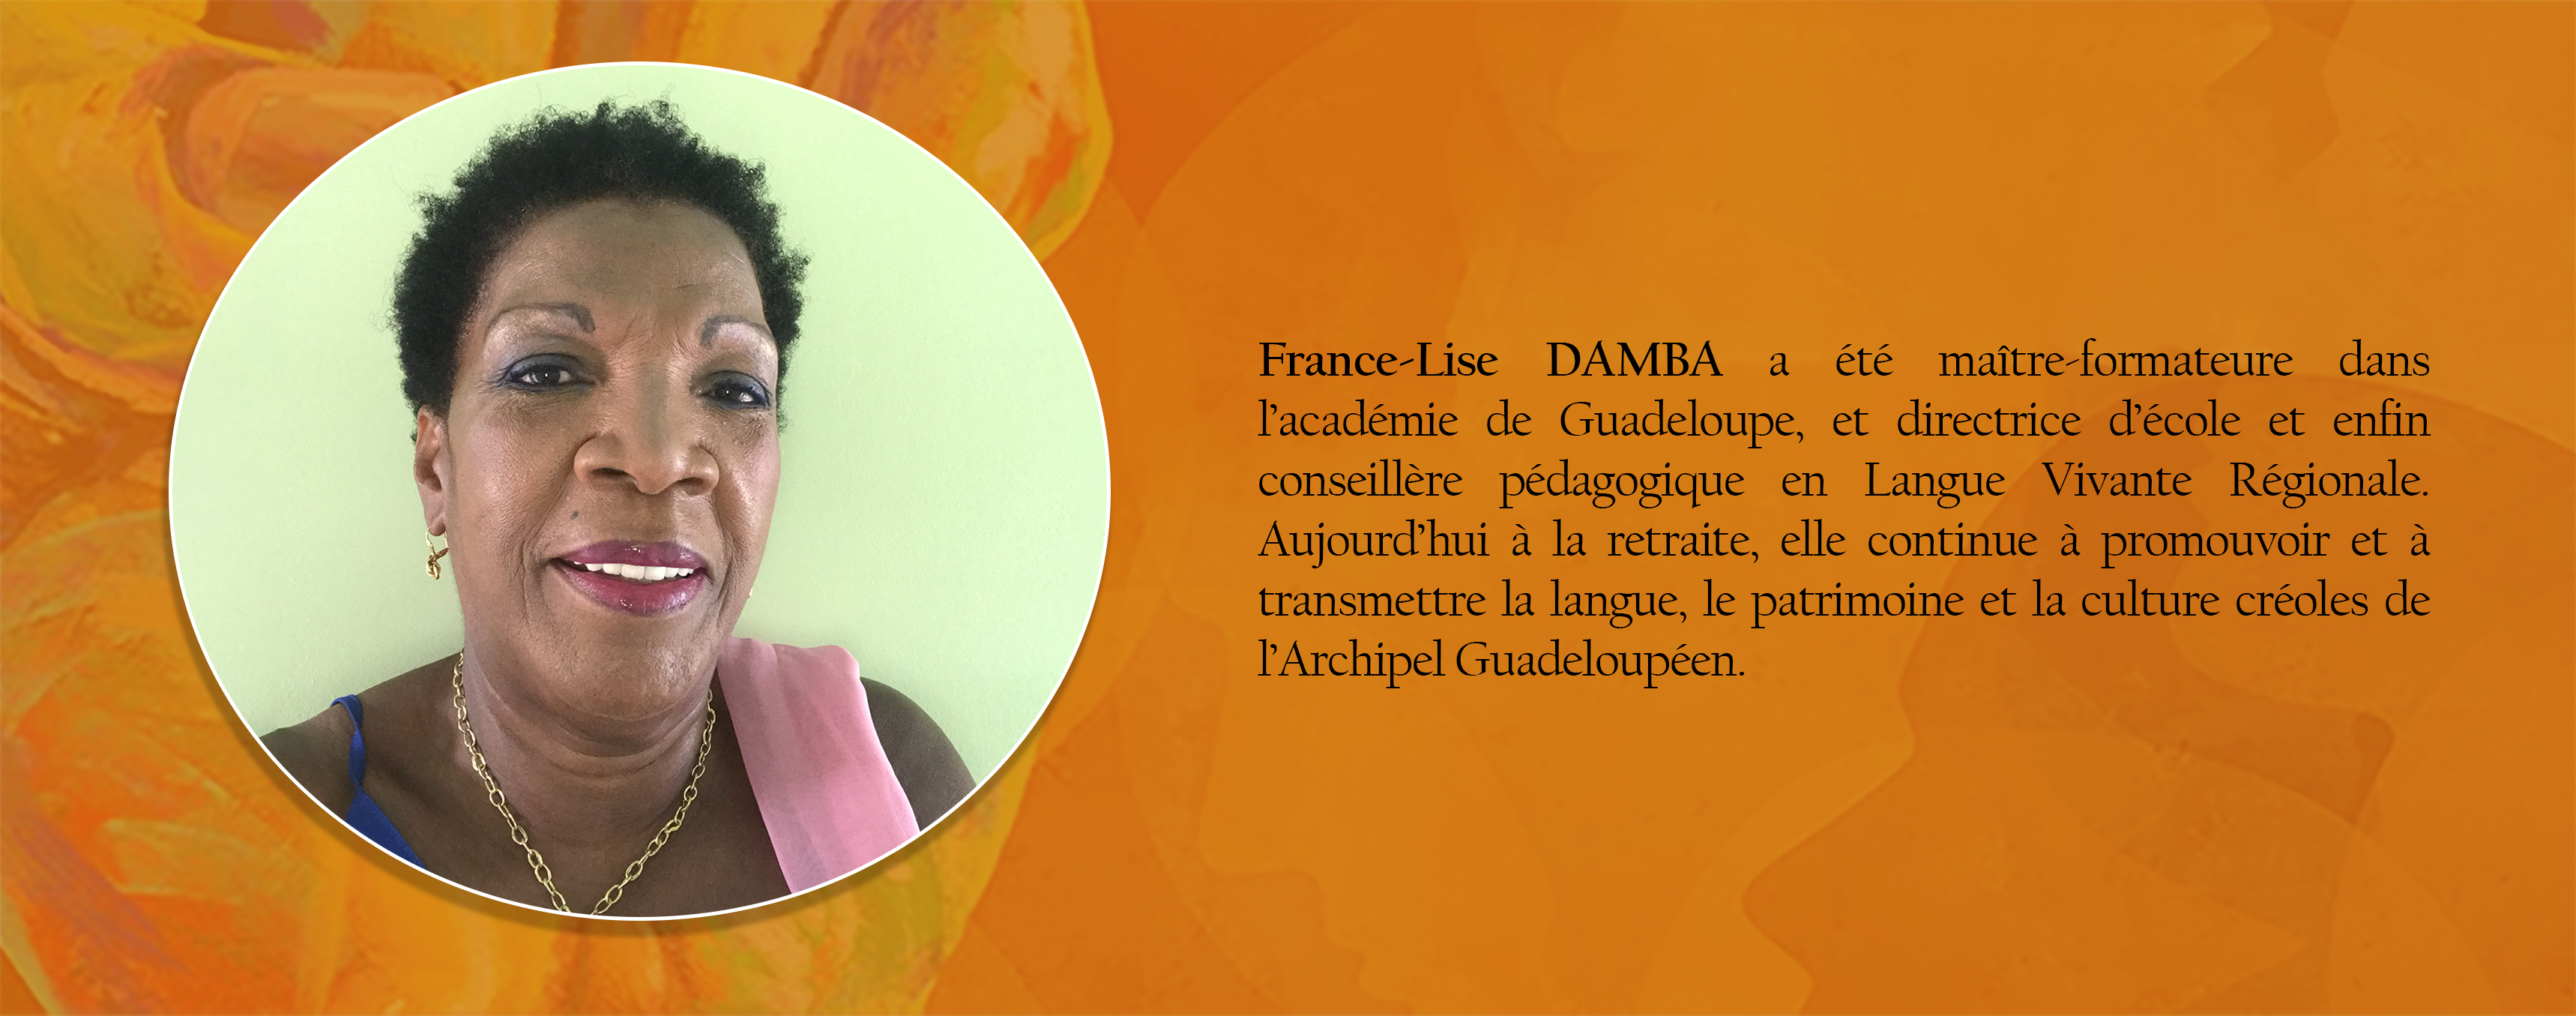 DAMBA France-Lise